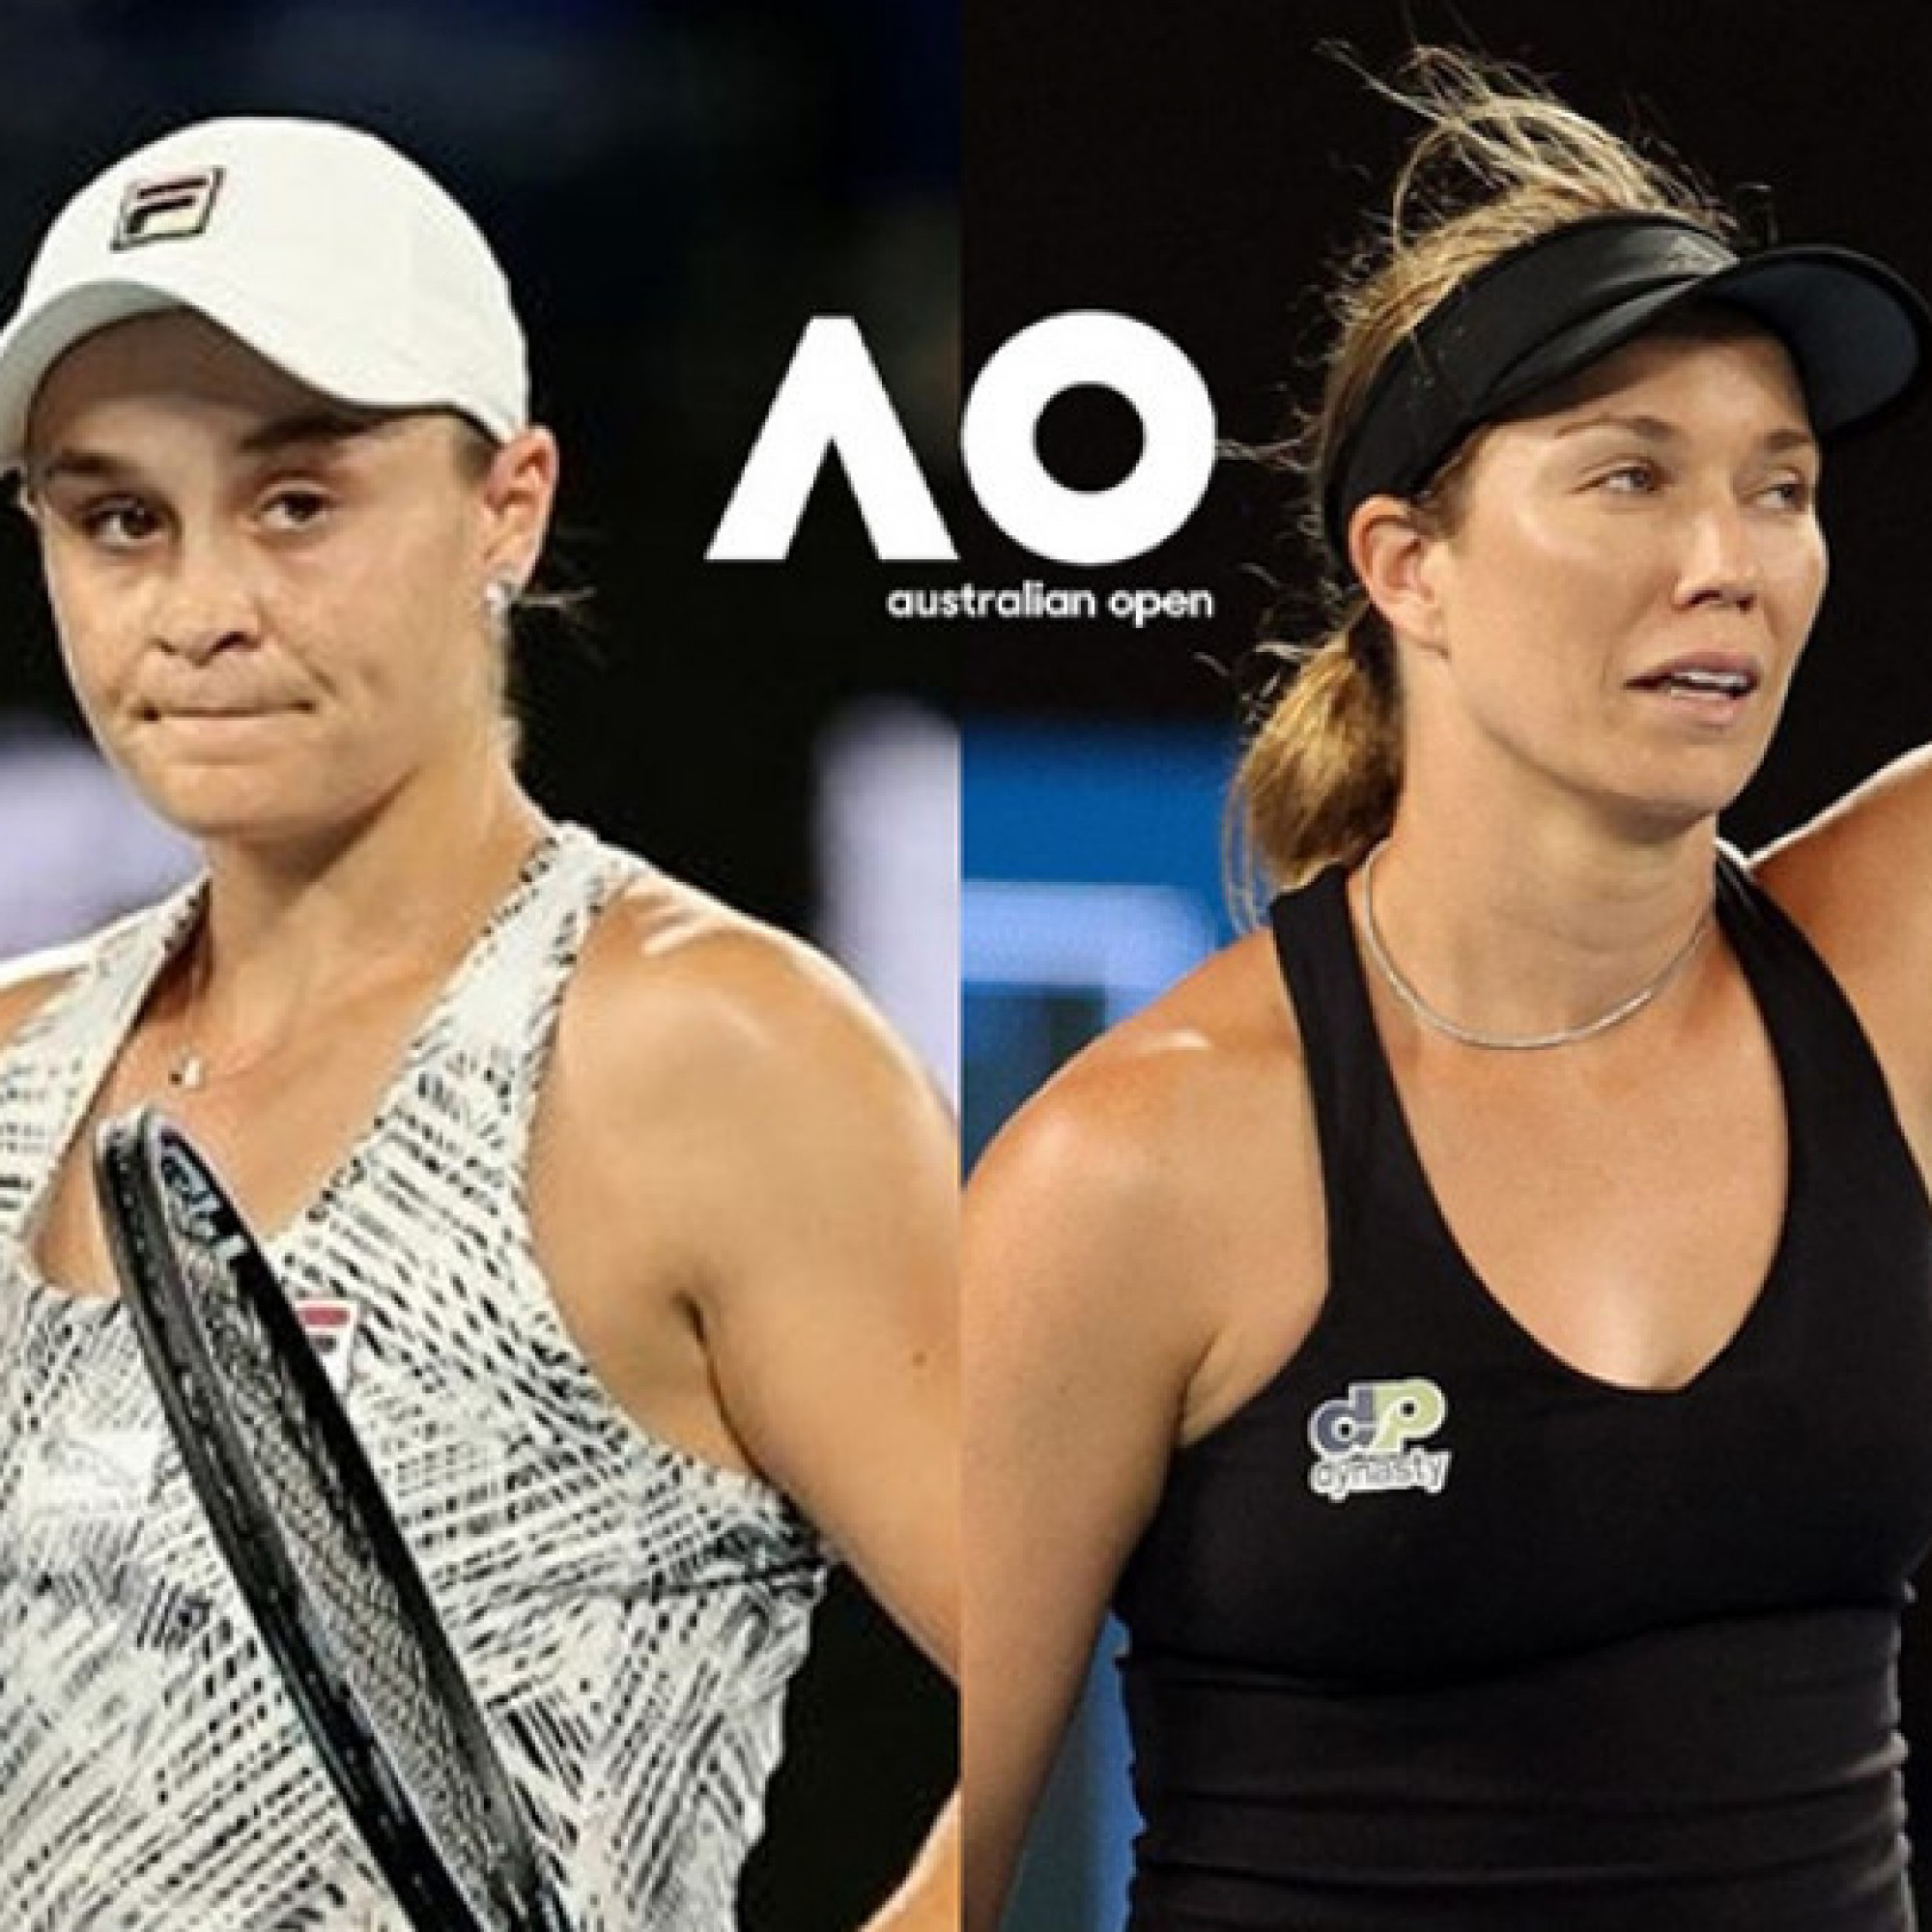  - Trực tiếp chung kết tennis nữ Barty - Collins: Barty thắng tie-break, đoạt chức vô địch (Australian Open) (Kết thúc)